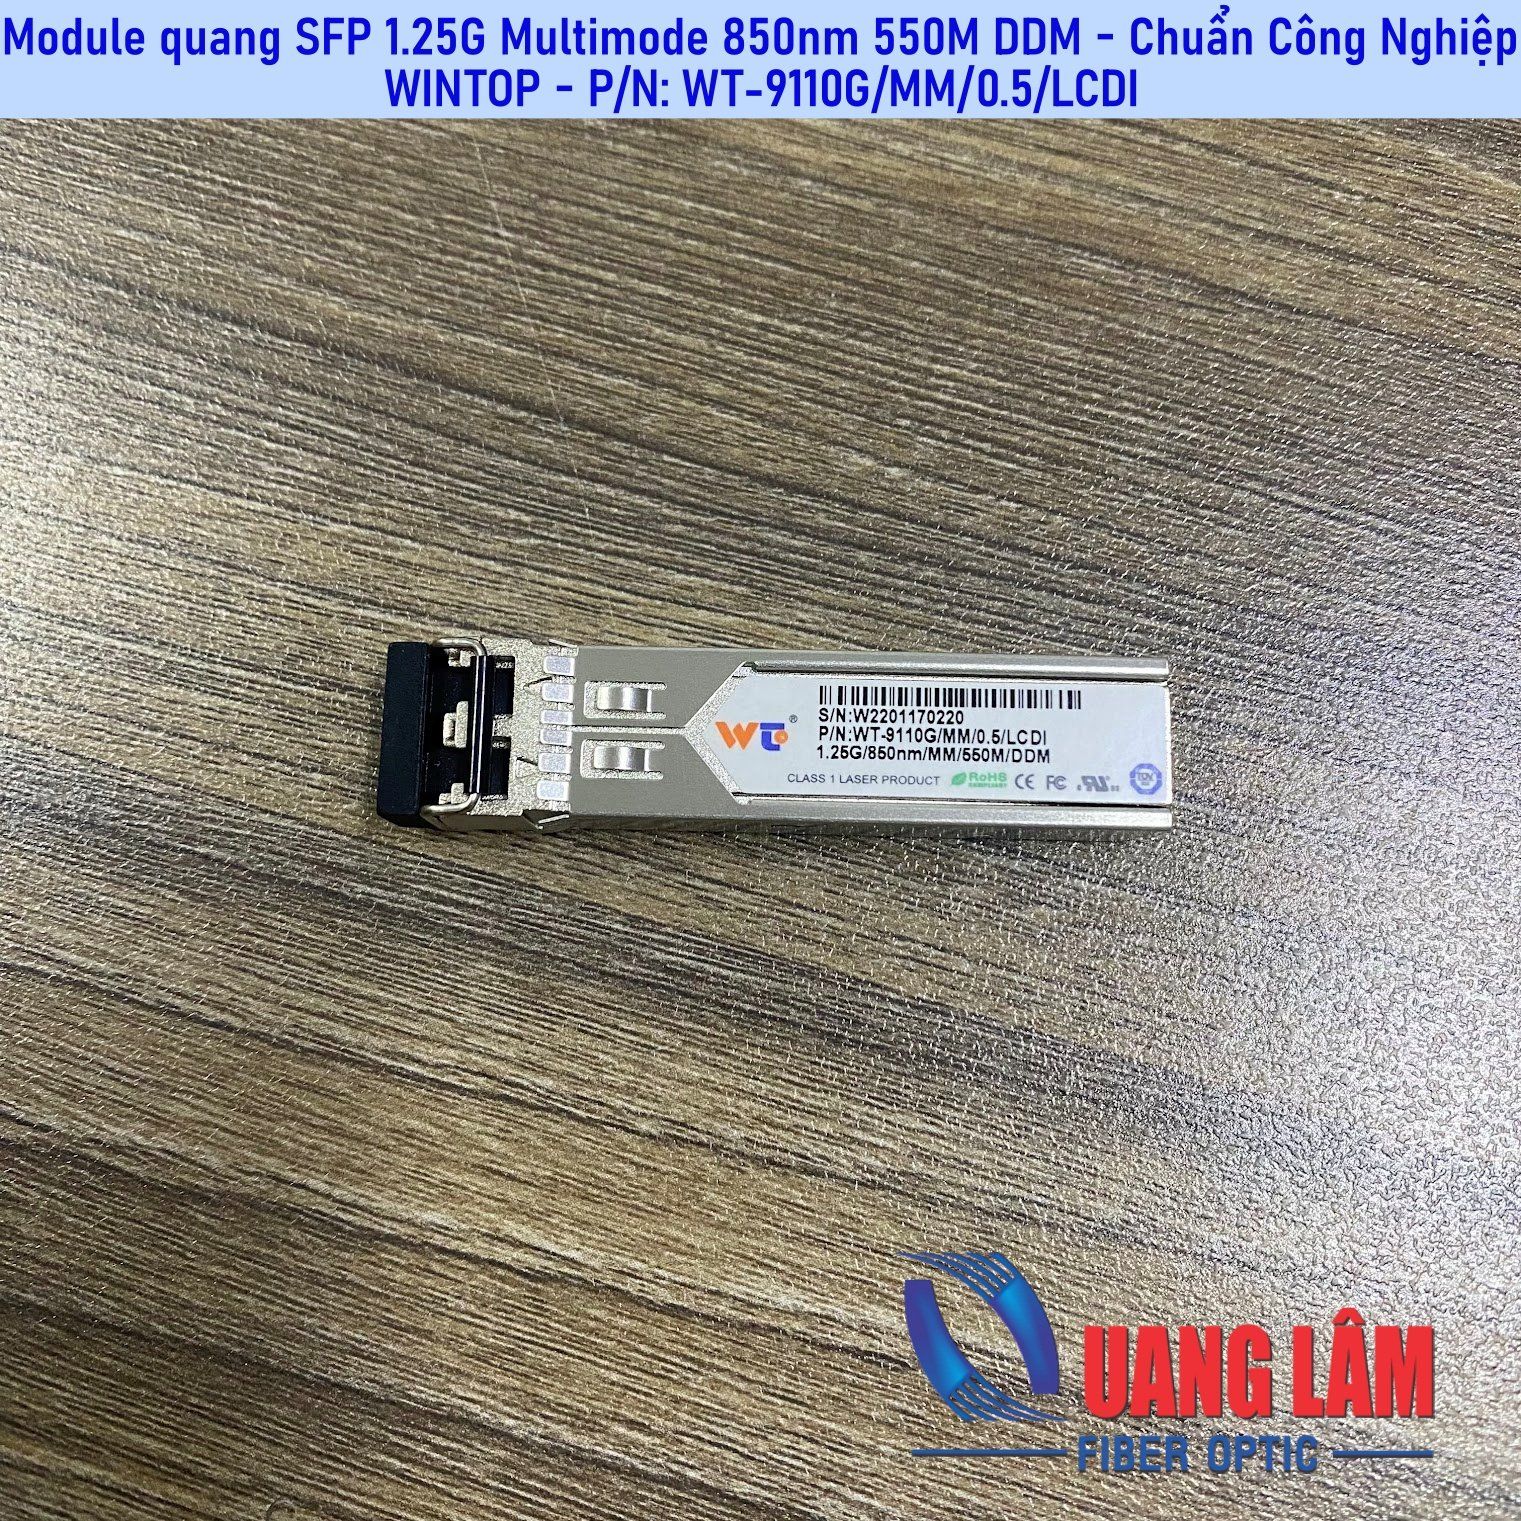 Module quang SFP 1.25G MM 850nm, 550M, P/N: WT-9110G/MM/0.5/LCDI (Chuẩn công nghiệp)